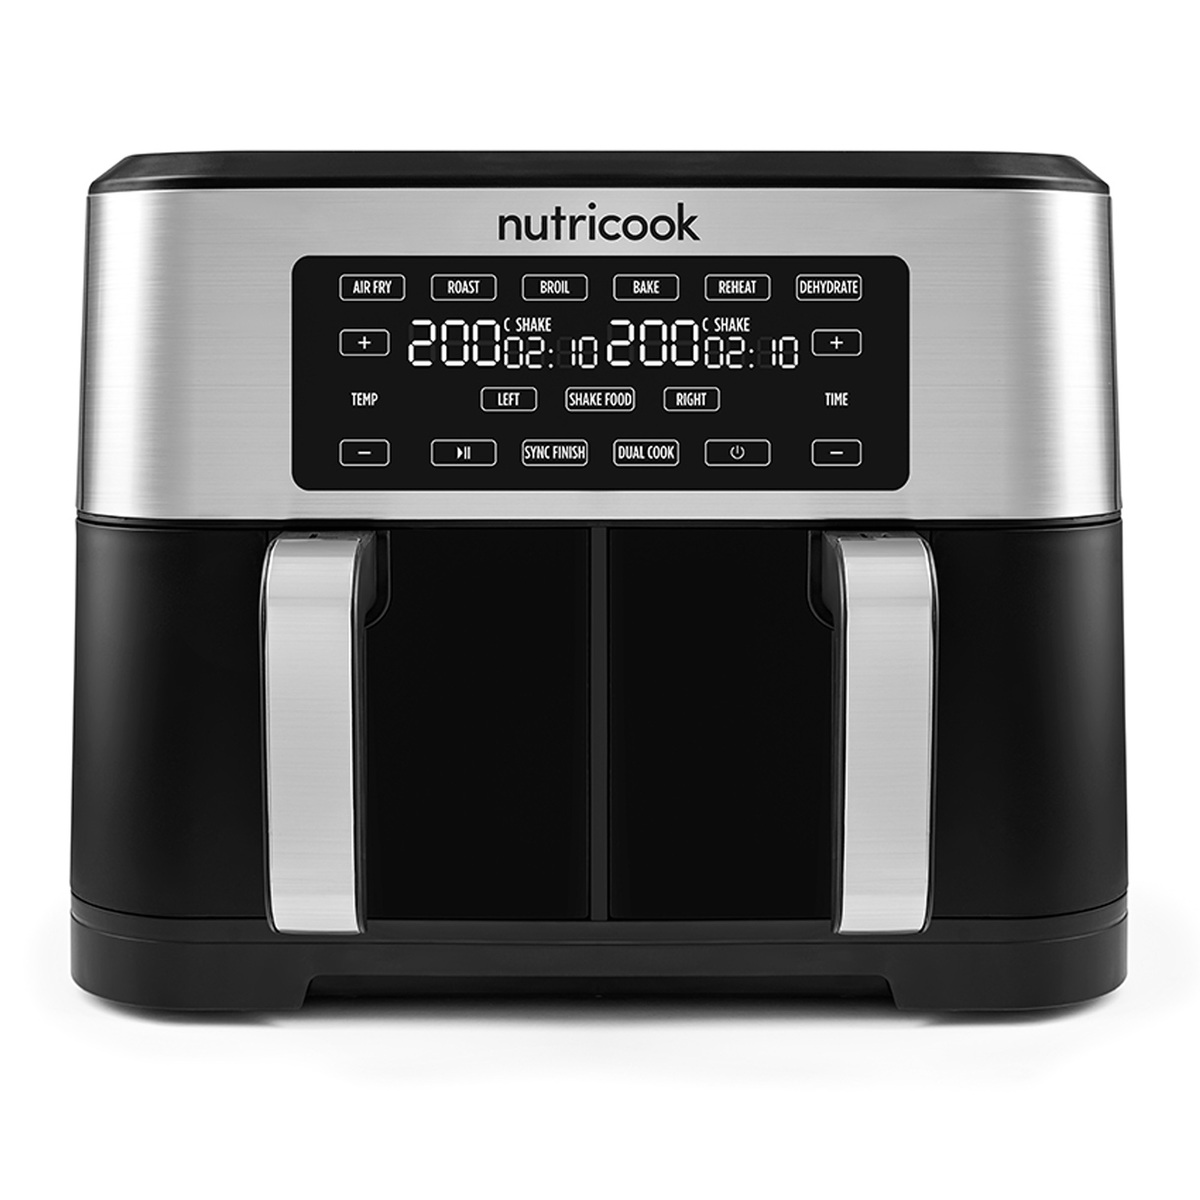 Nutricook Air Fryer Duo 6-in-1 Preset Programs, 8 L, 2800 W, Silver/Black, NC-AF800